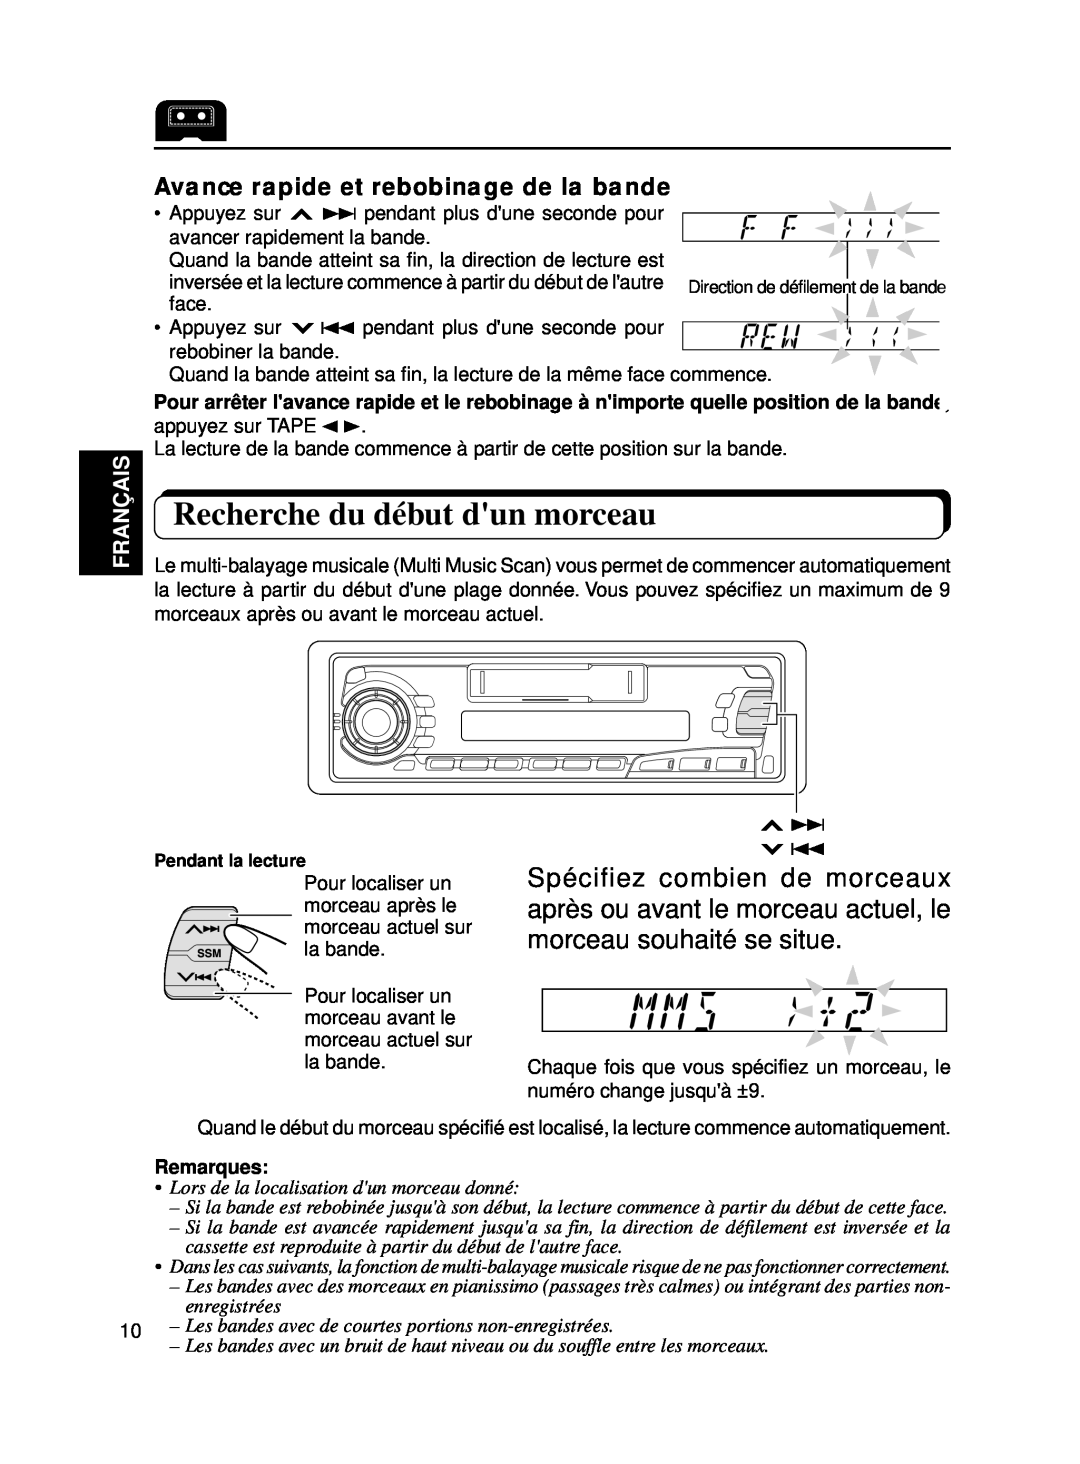 JVC KS-FX250 manual Recherche du début dun morceau, Avance rapide et rebobinage de la bande, Français, Remarques 